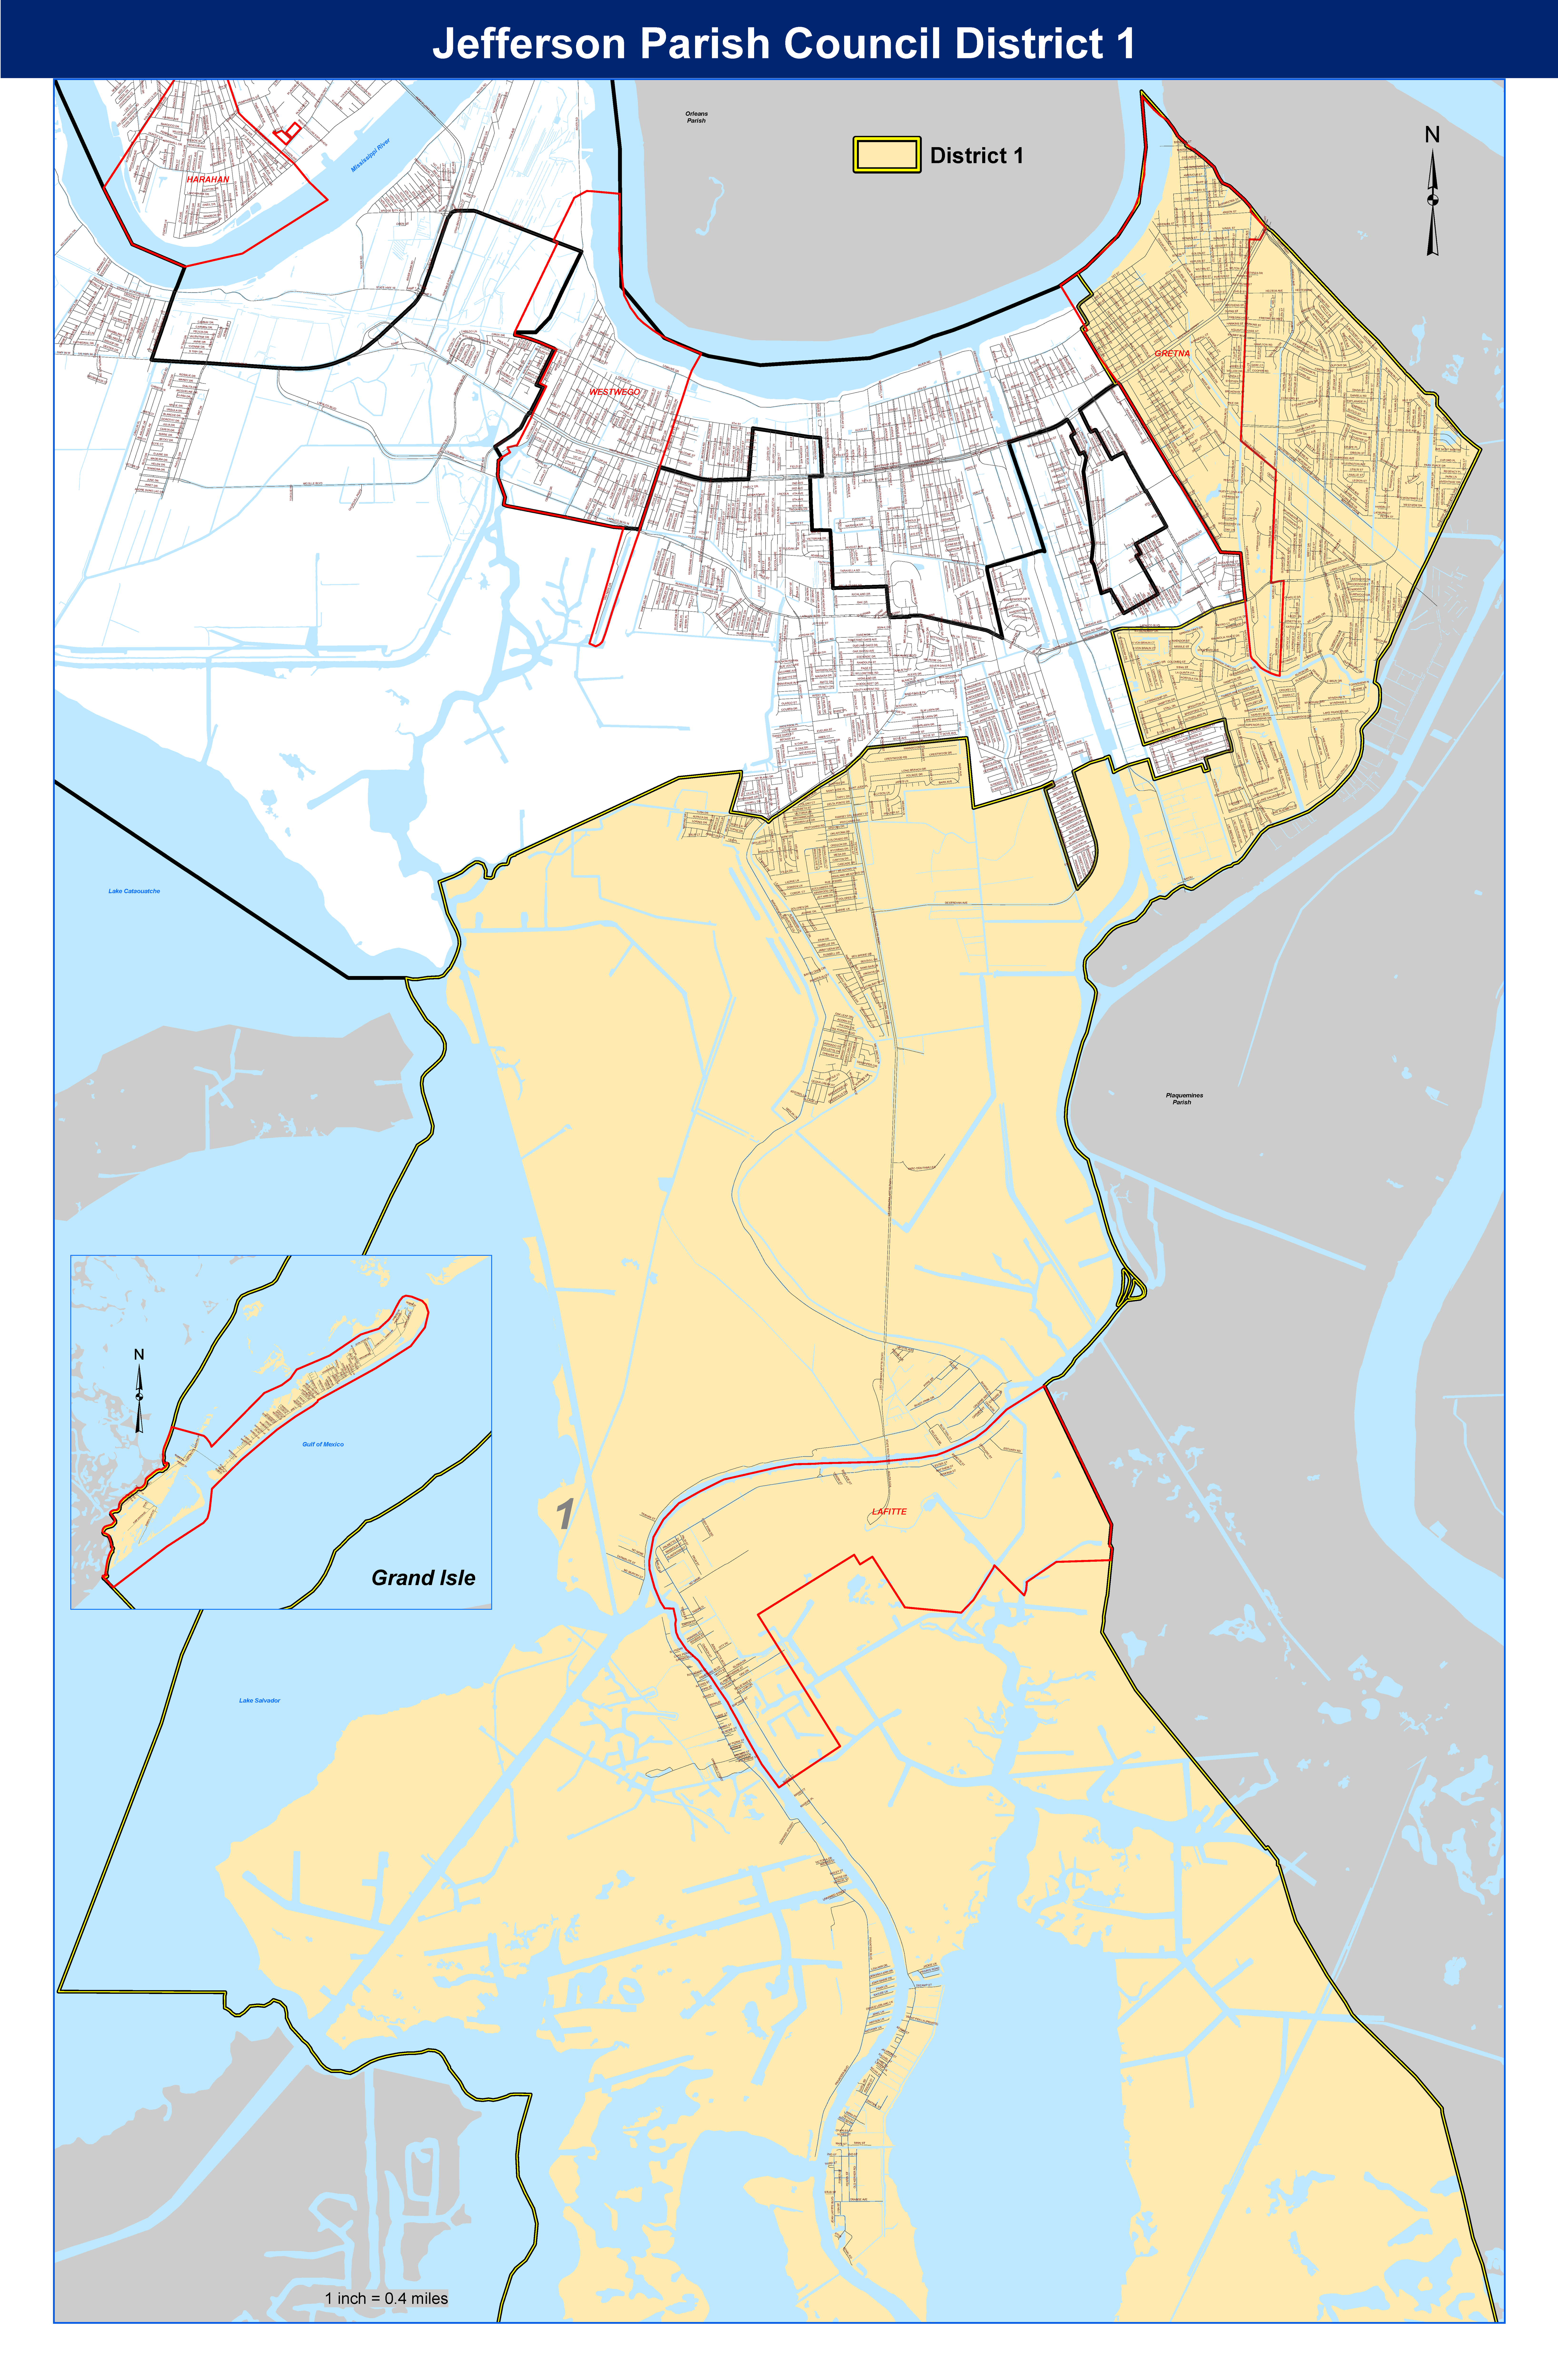 Council District 1 Map